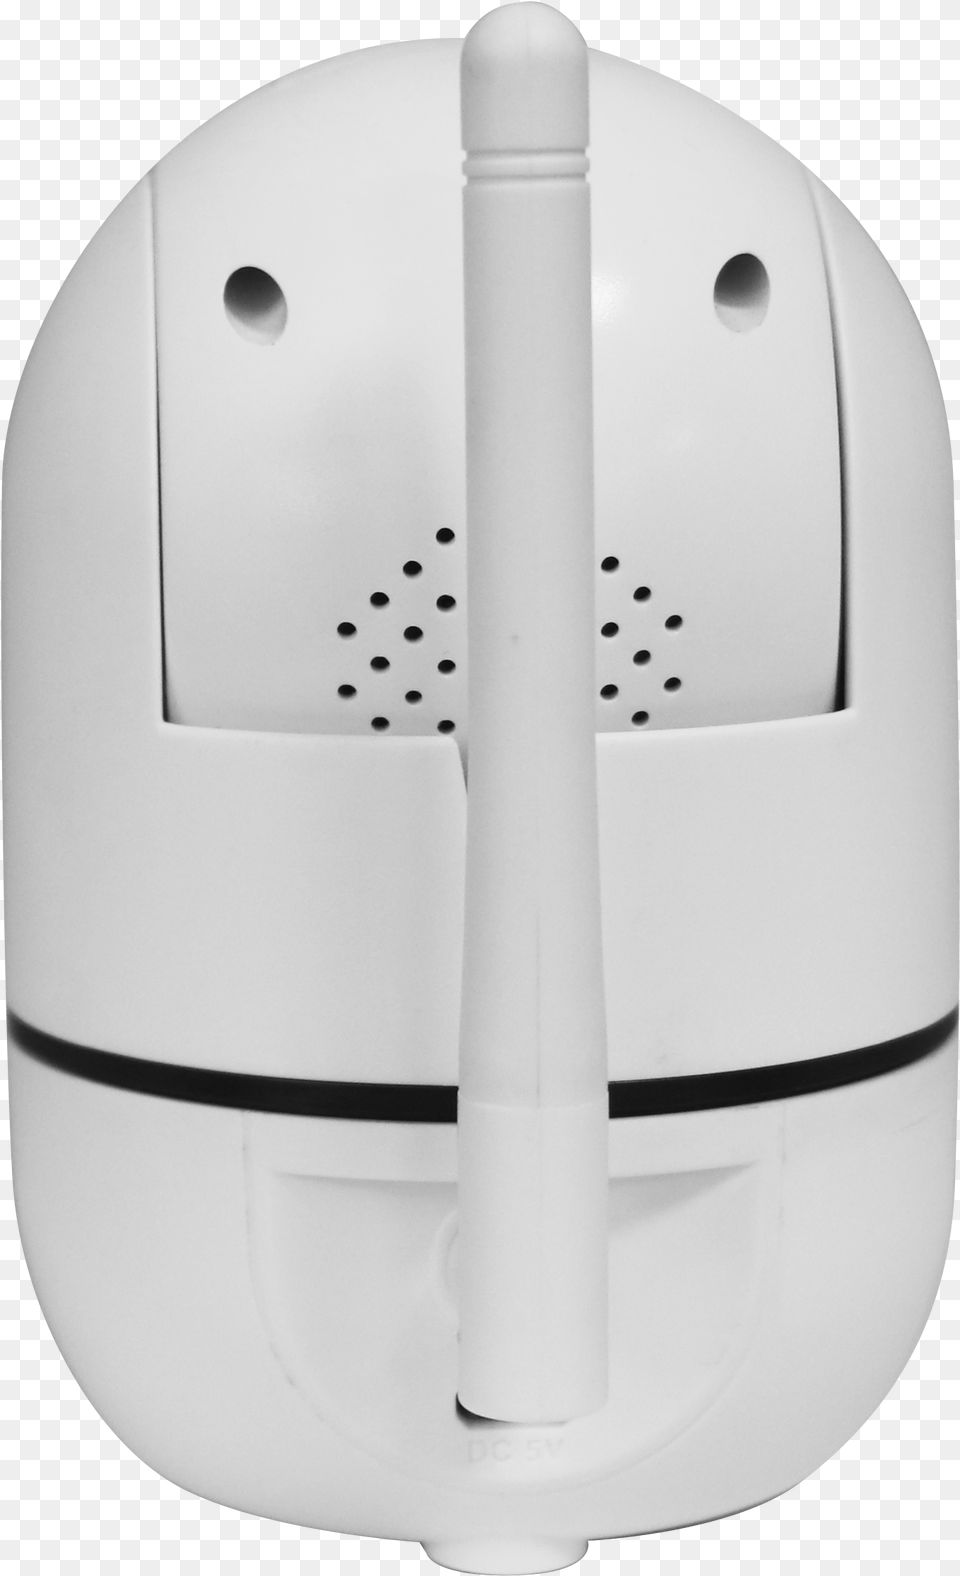 Carbon Monoxide Detector, Helmet, Device, Appliance, Electrical Device Png Image